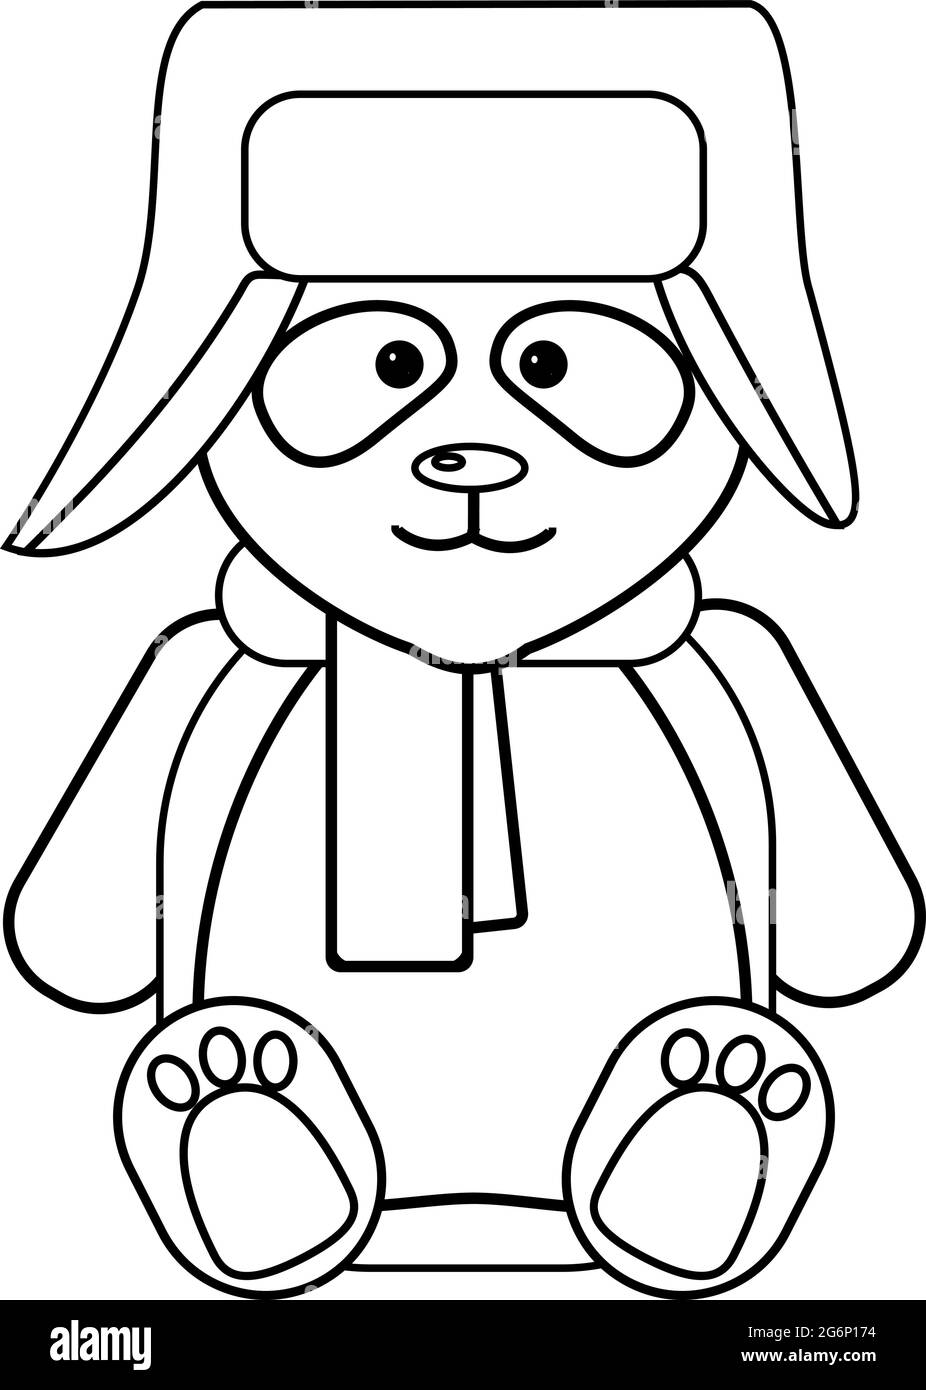 Ein lustiger Panda sitzt in einem Hut mit Ohrenklappen und einem Schal. Vektor-Illustration von Doodle Umriss. Stock Vektor